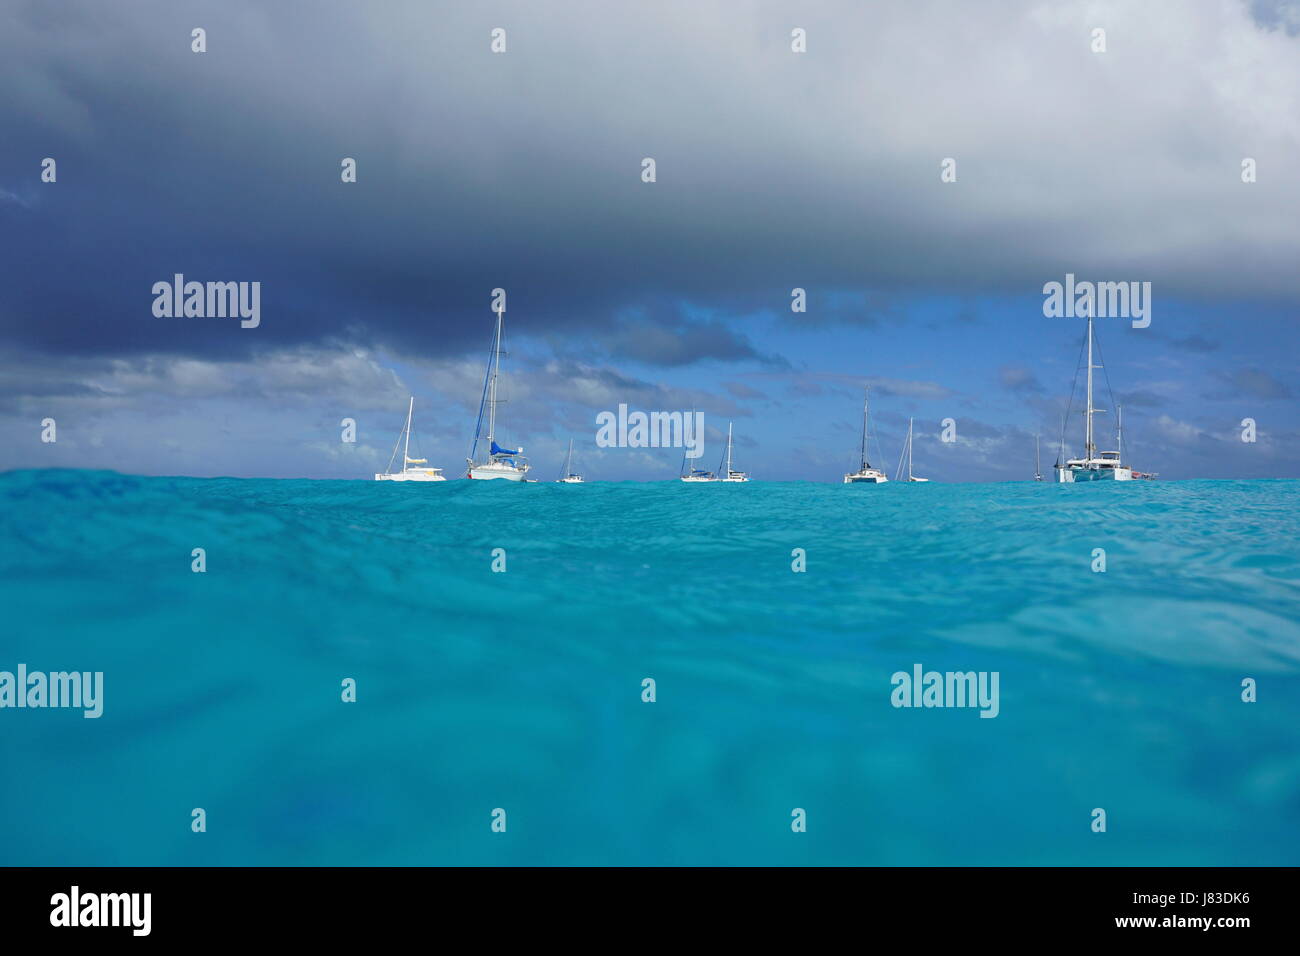 Seascape visto dalla superficie del mare, barche a vela e catamarani ancorati nella laguna e cielo nuvoloso, oceano pacifico del sud, atollo di Rangiroa, Tuamotus Foto Stock